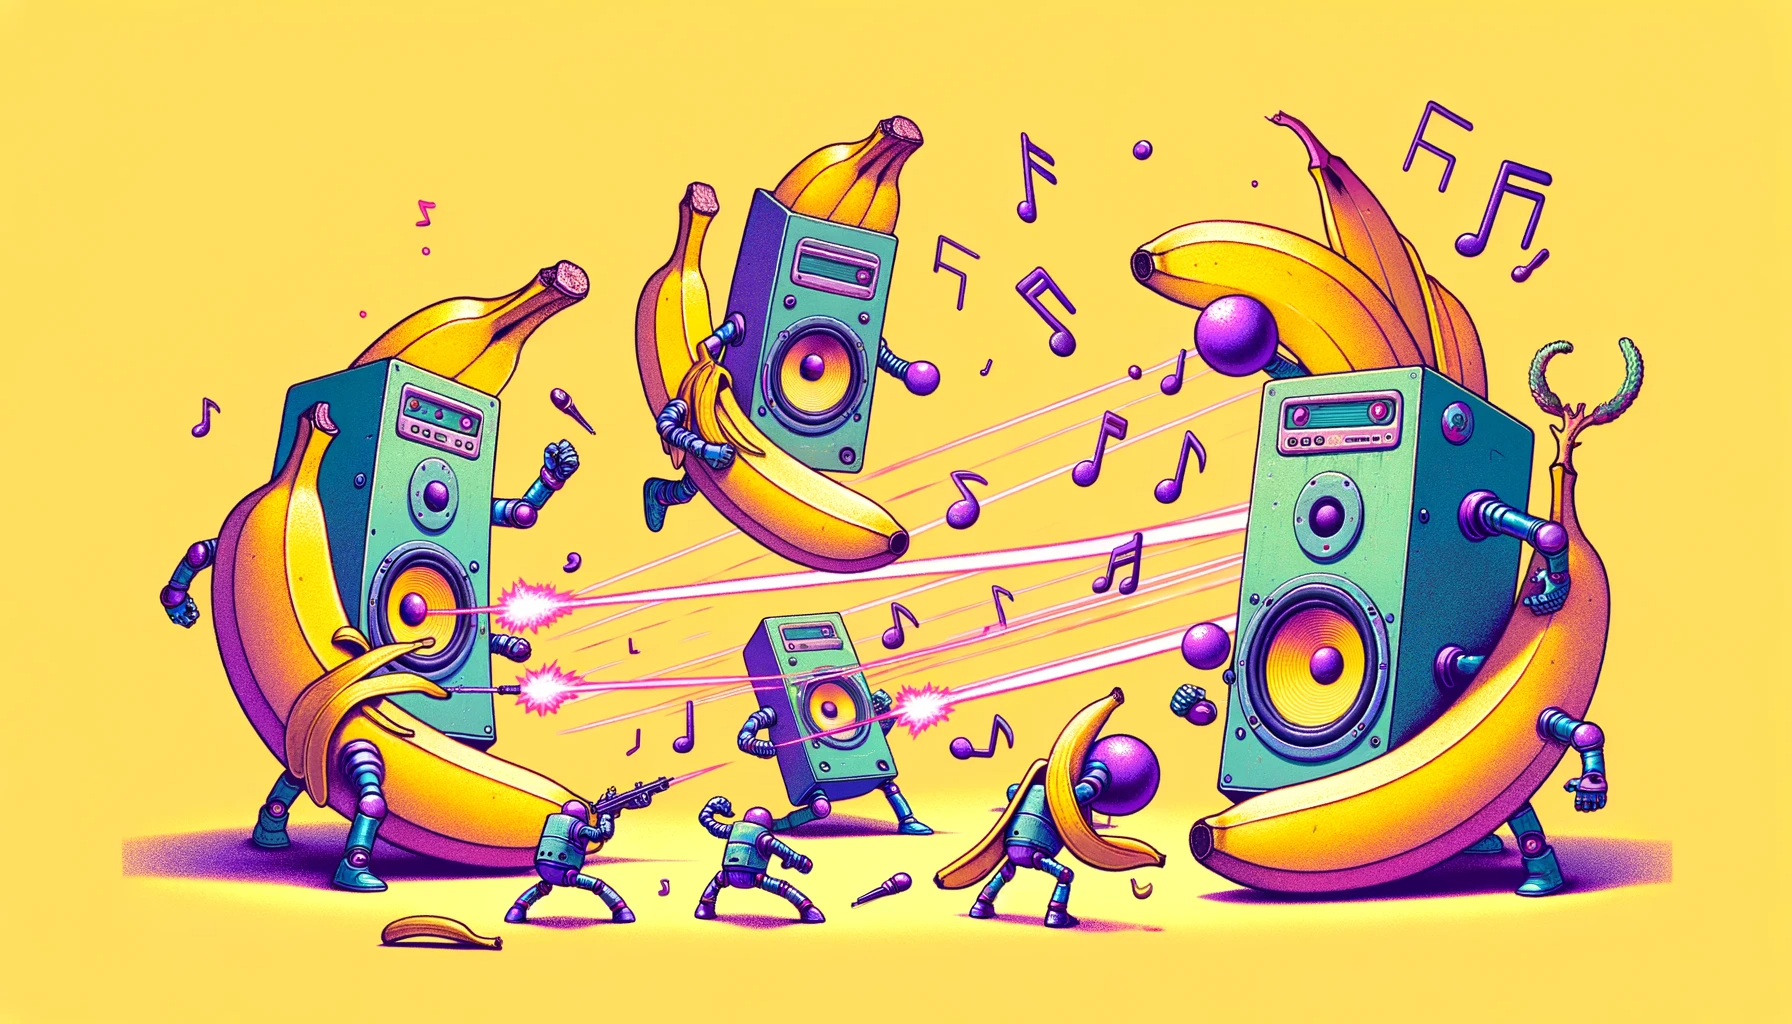 imagem de bananas lutando contra robôs em formato de caixa de som geradas por IA generativa